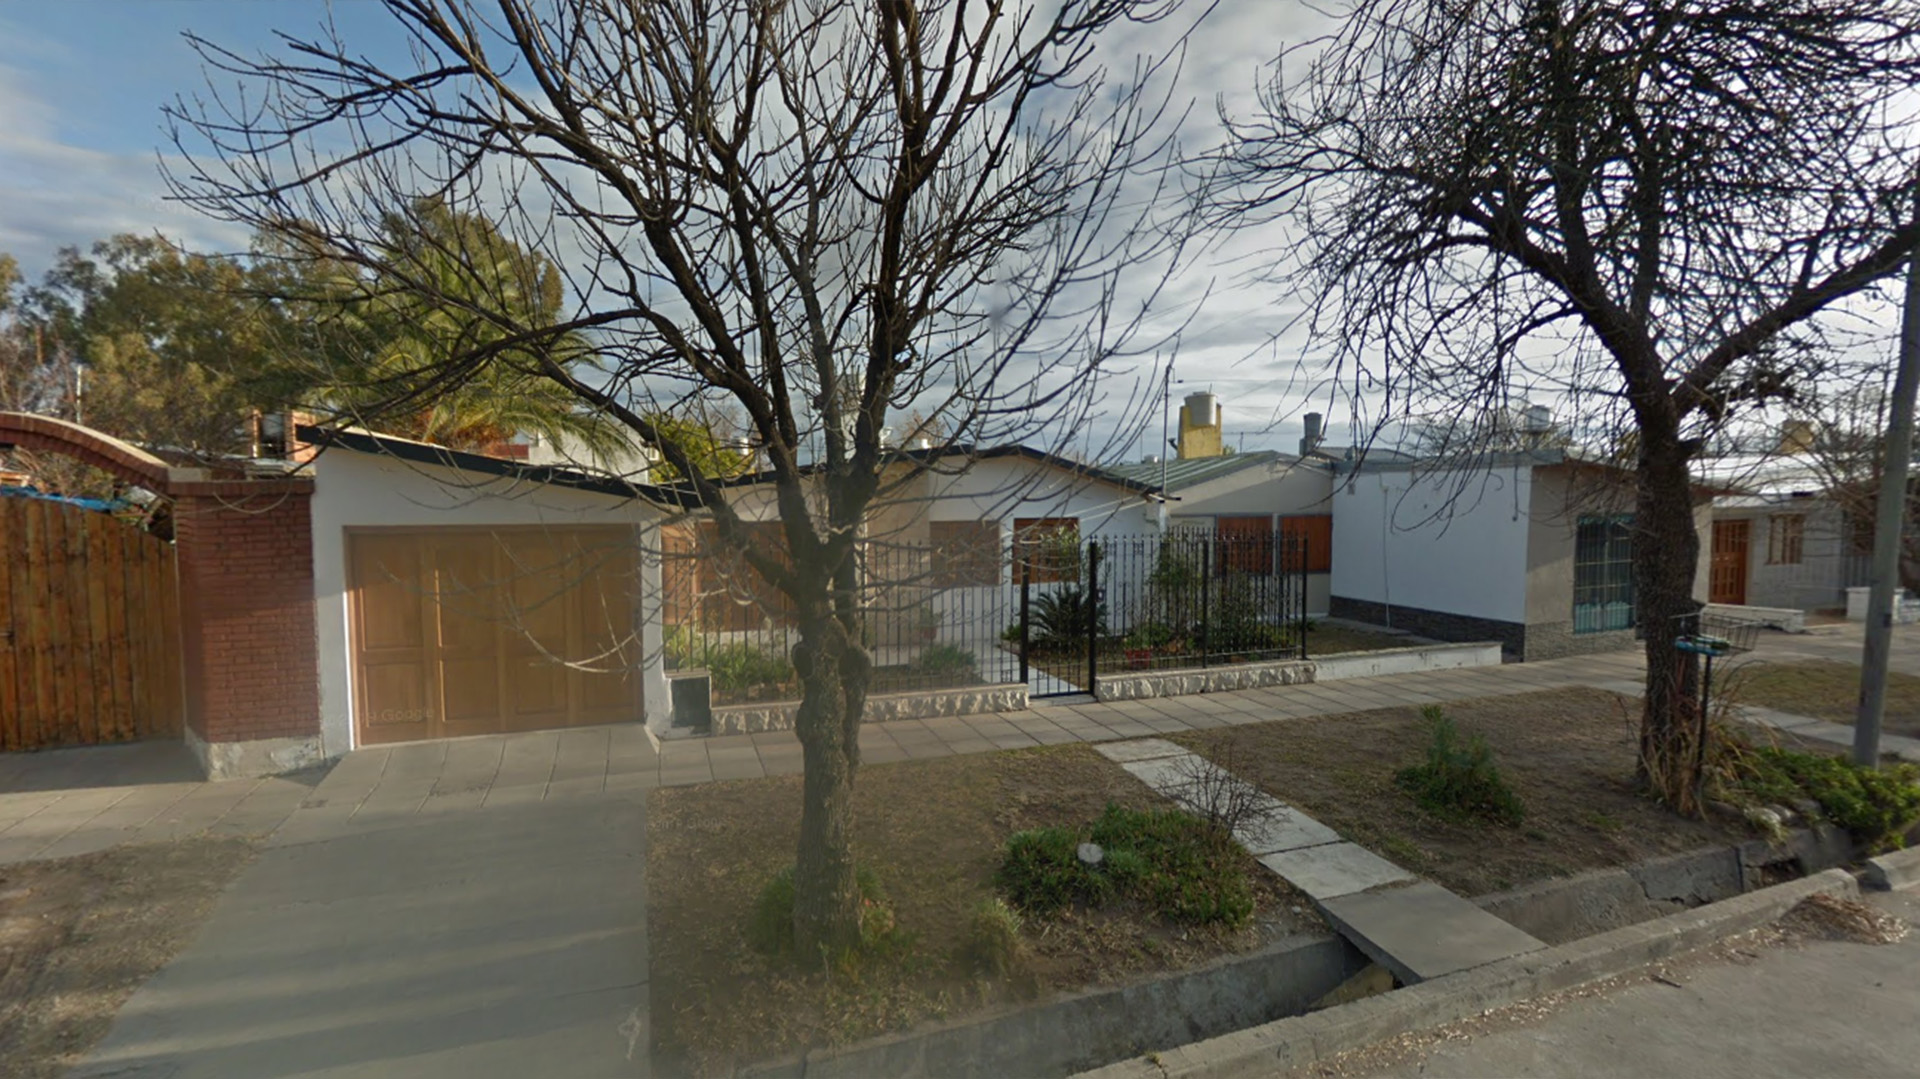 La casa que compró la familia Macaluso está situada en el Barrio Unimev, compuesto por unas 1.100 propiedades de similares características (foto-Google Maps)